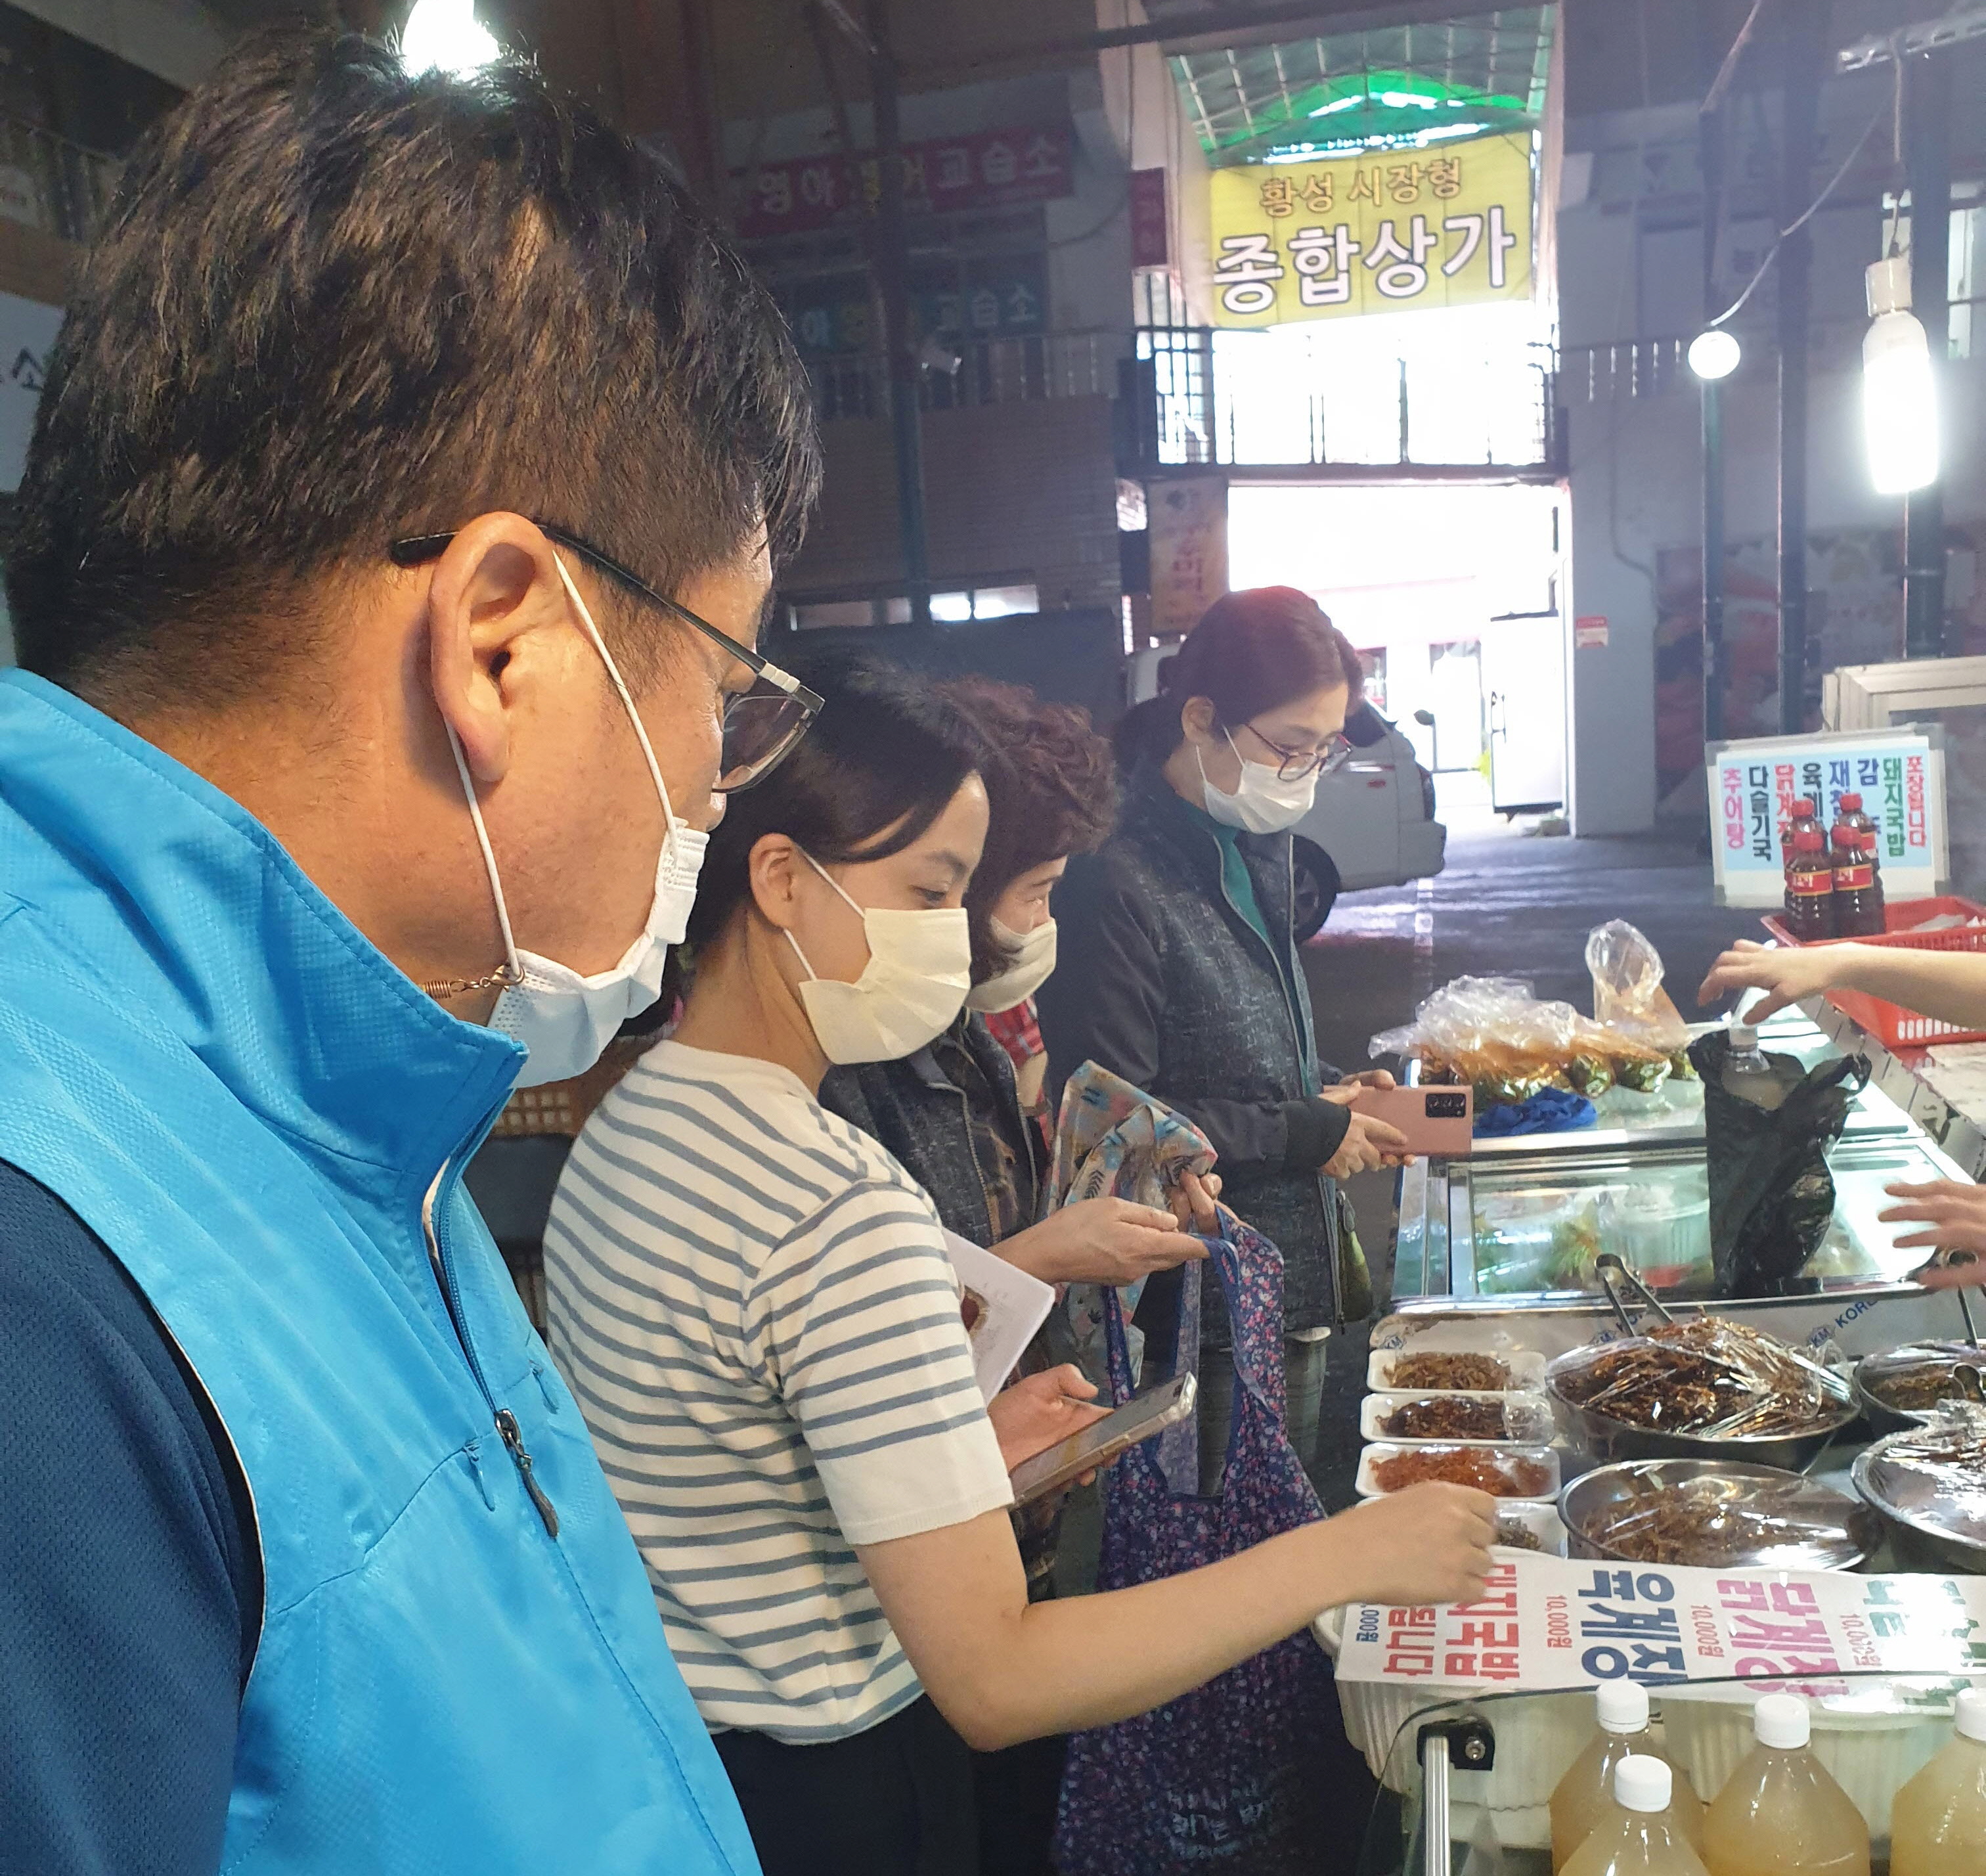 경주시 황성동행정복지센터 직원들이 8일 황성동 전통시장(현대시장)을 방문해 장을 보고 있다.